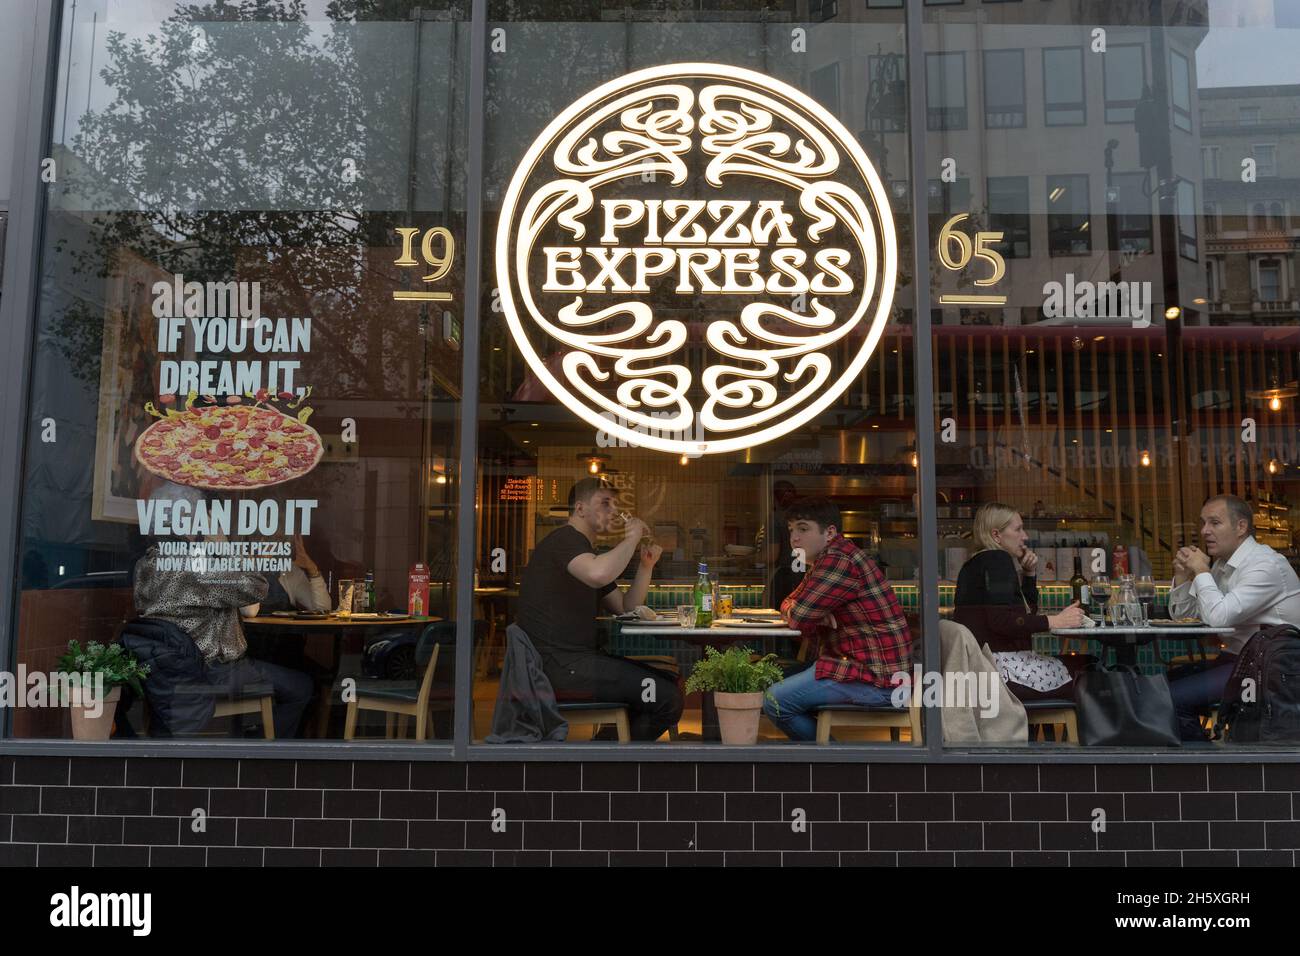 Restaurant pizza express près de Trafalgar Square Londres Angleterre Royaume-Uni Banque D'Images